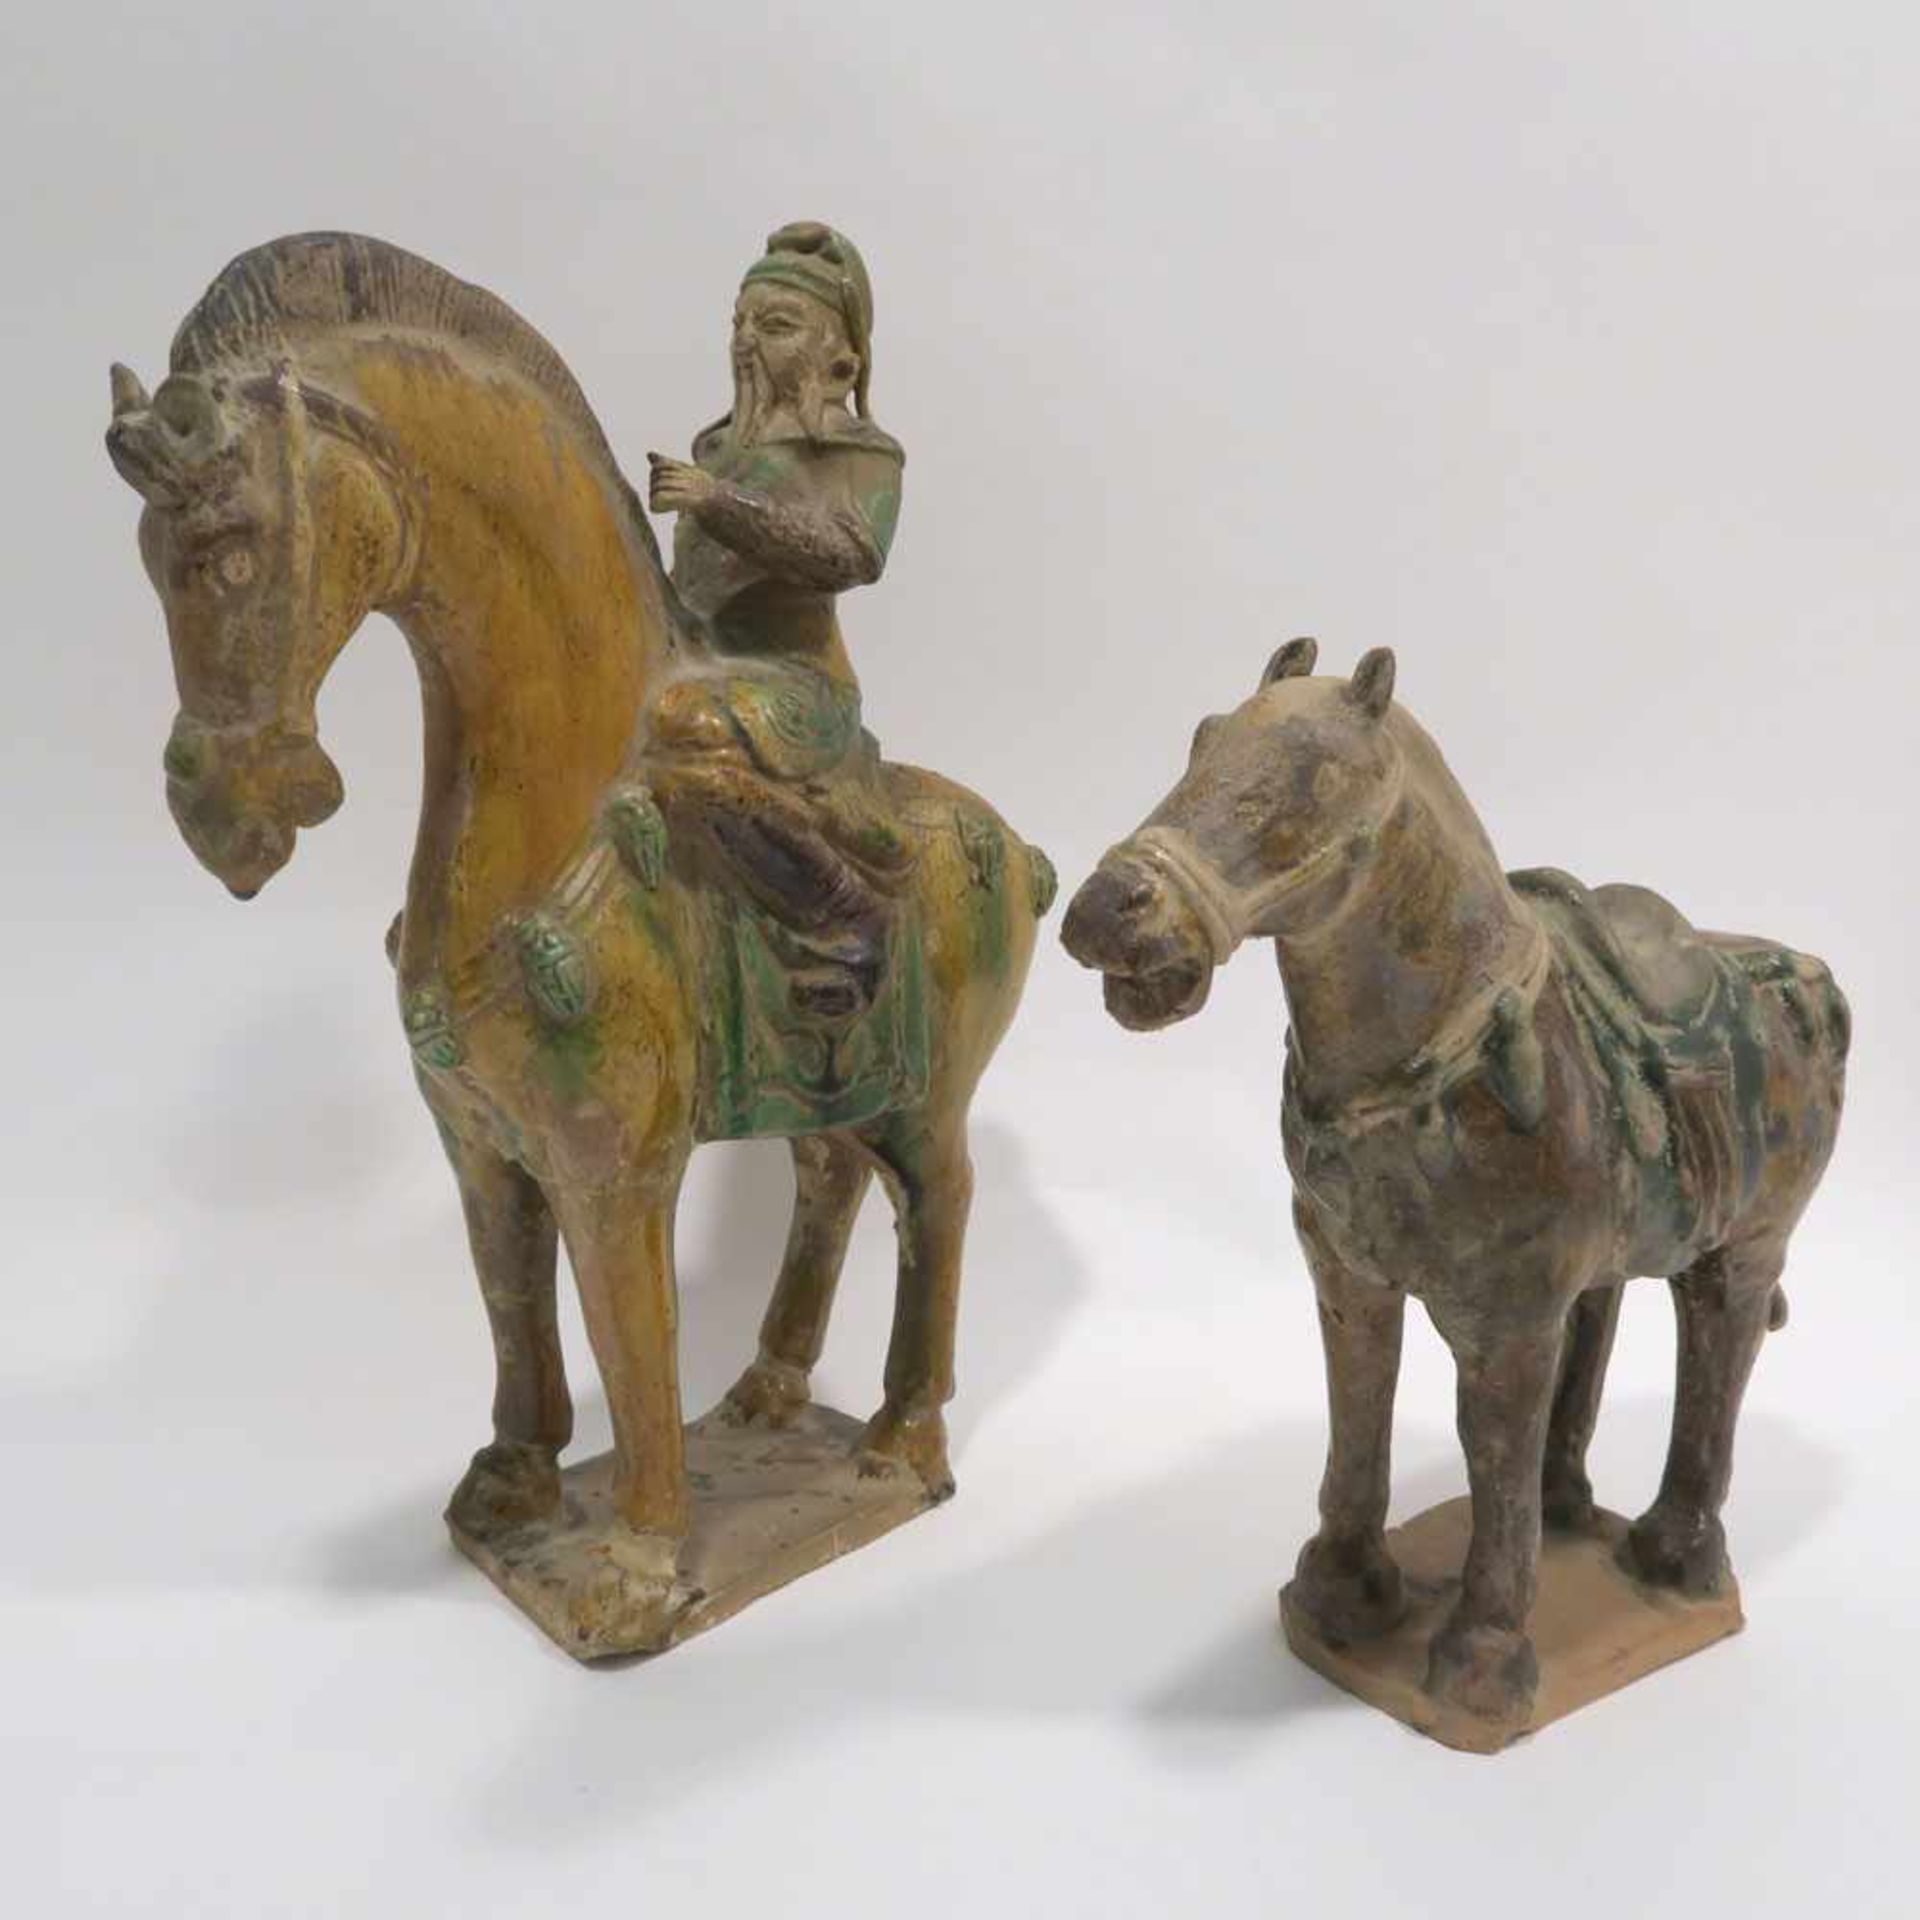 Pferd mit Reiter / PferdChina, im Tang-Stil. Keramik, farbig gefasst. Tlw. rest., tlw. besch. H.